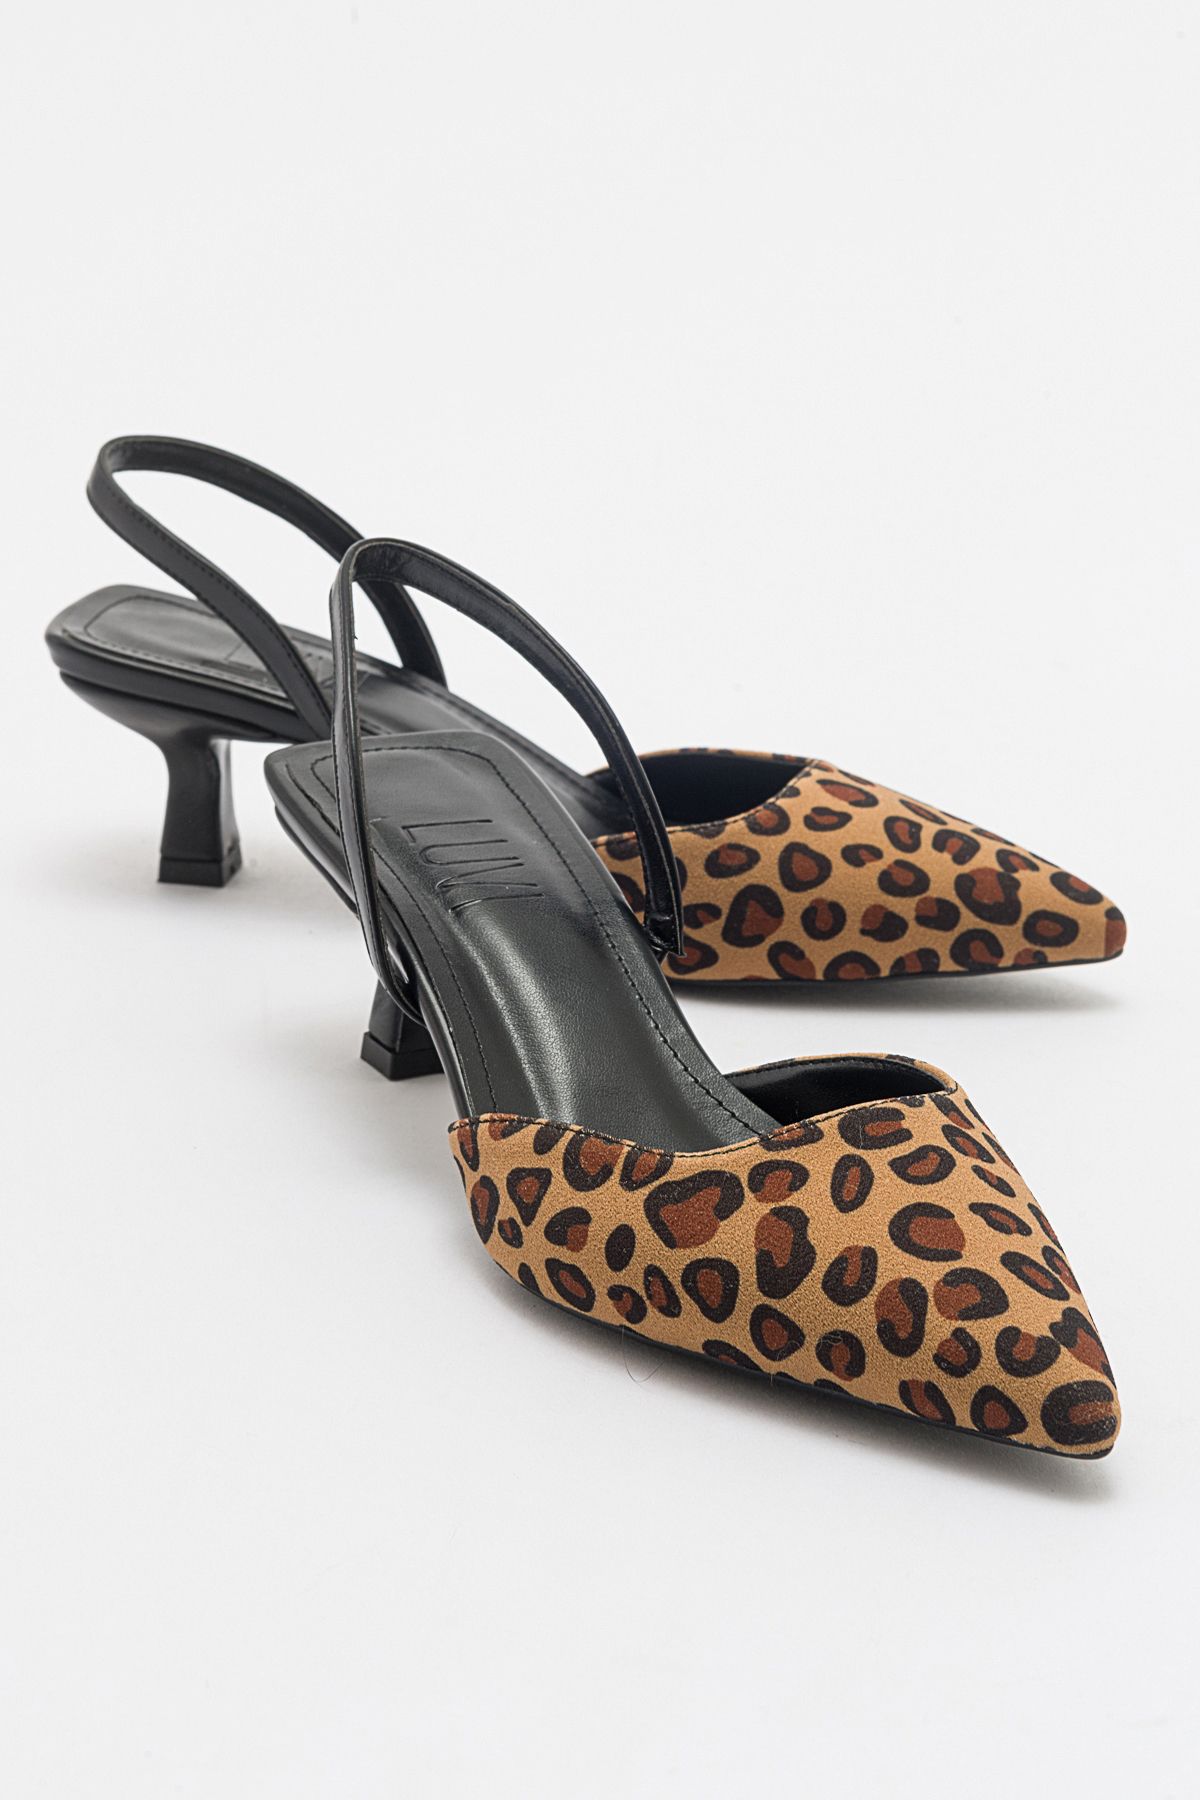 luvishoes Over Siyah Sarı Desenli Kadın Topuklu Ayakkabı